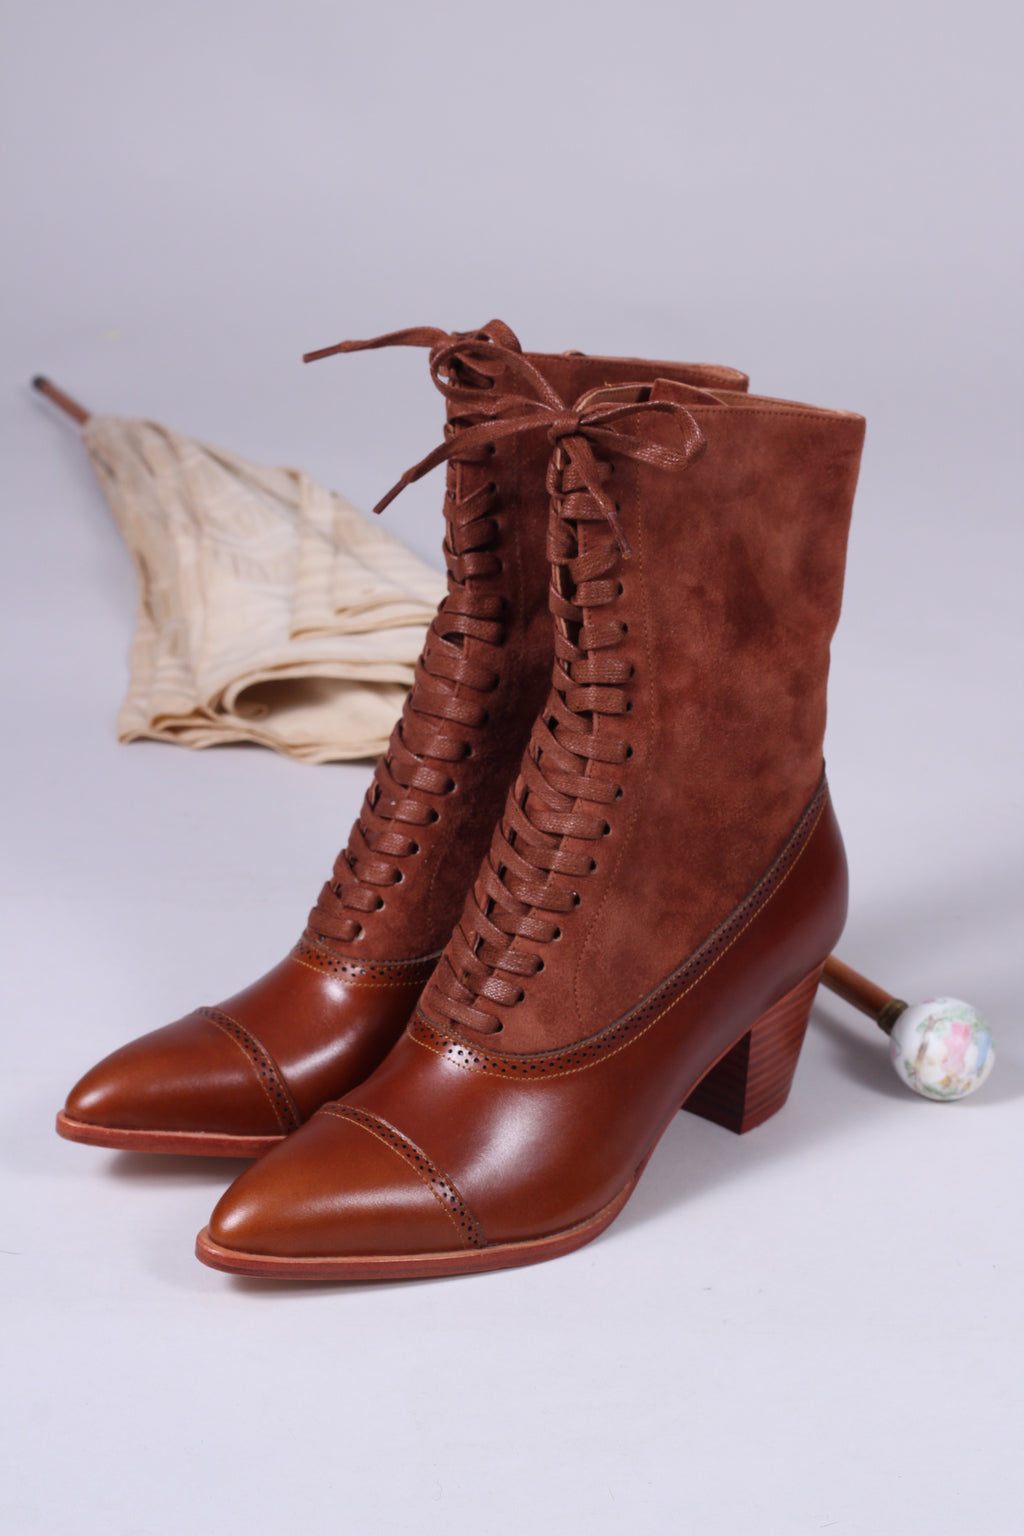 Edwardianske støvler 1900-1910 - cognac brun - Victoria